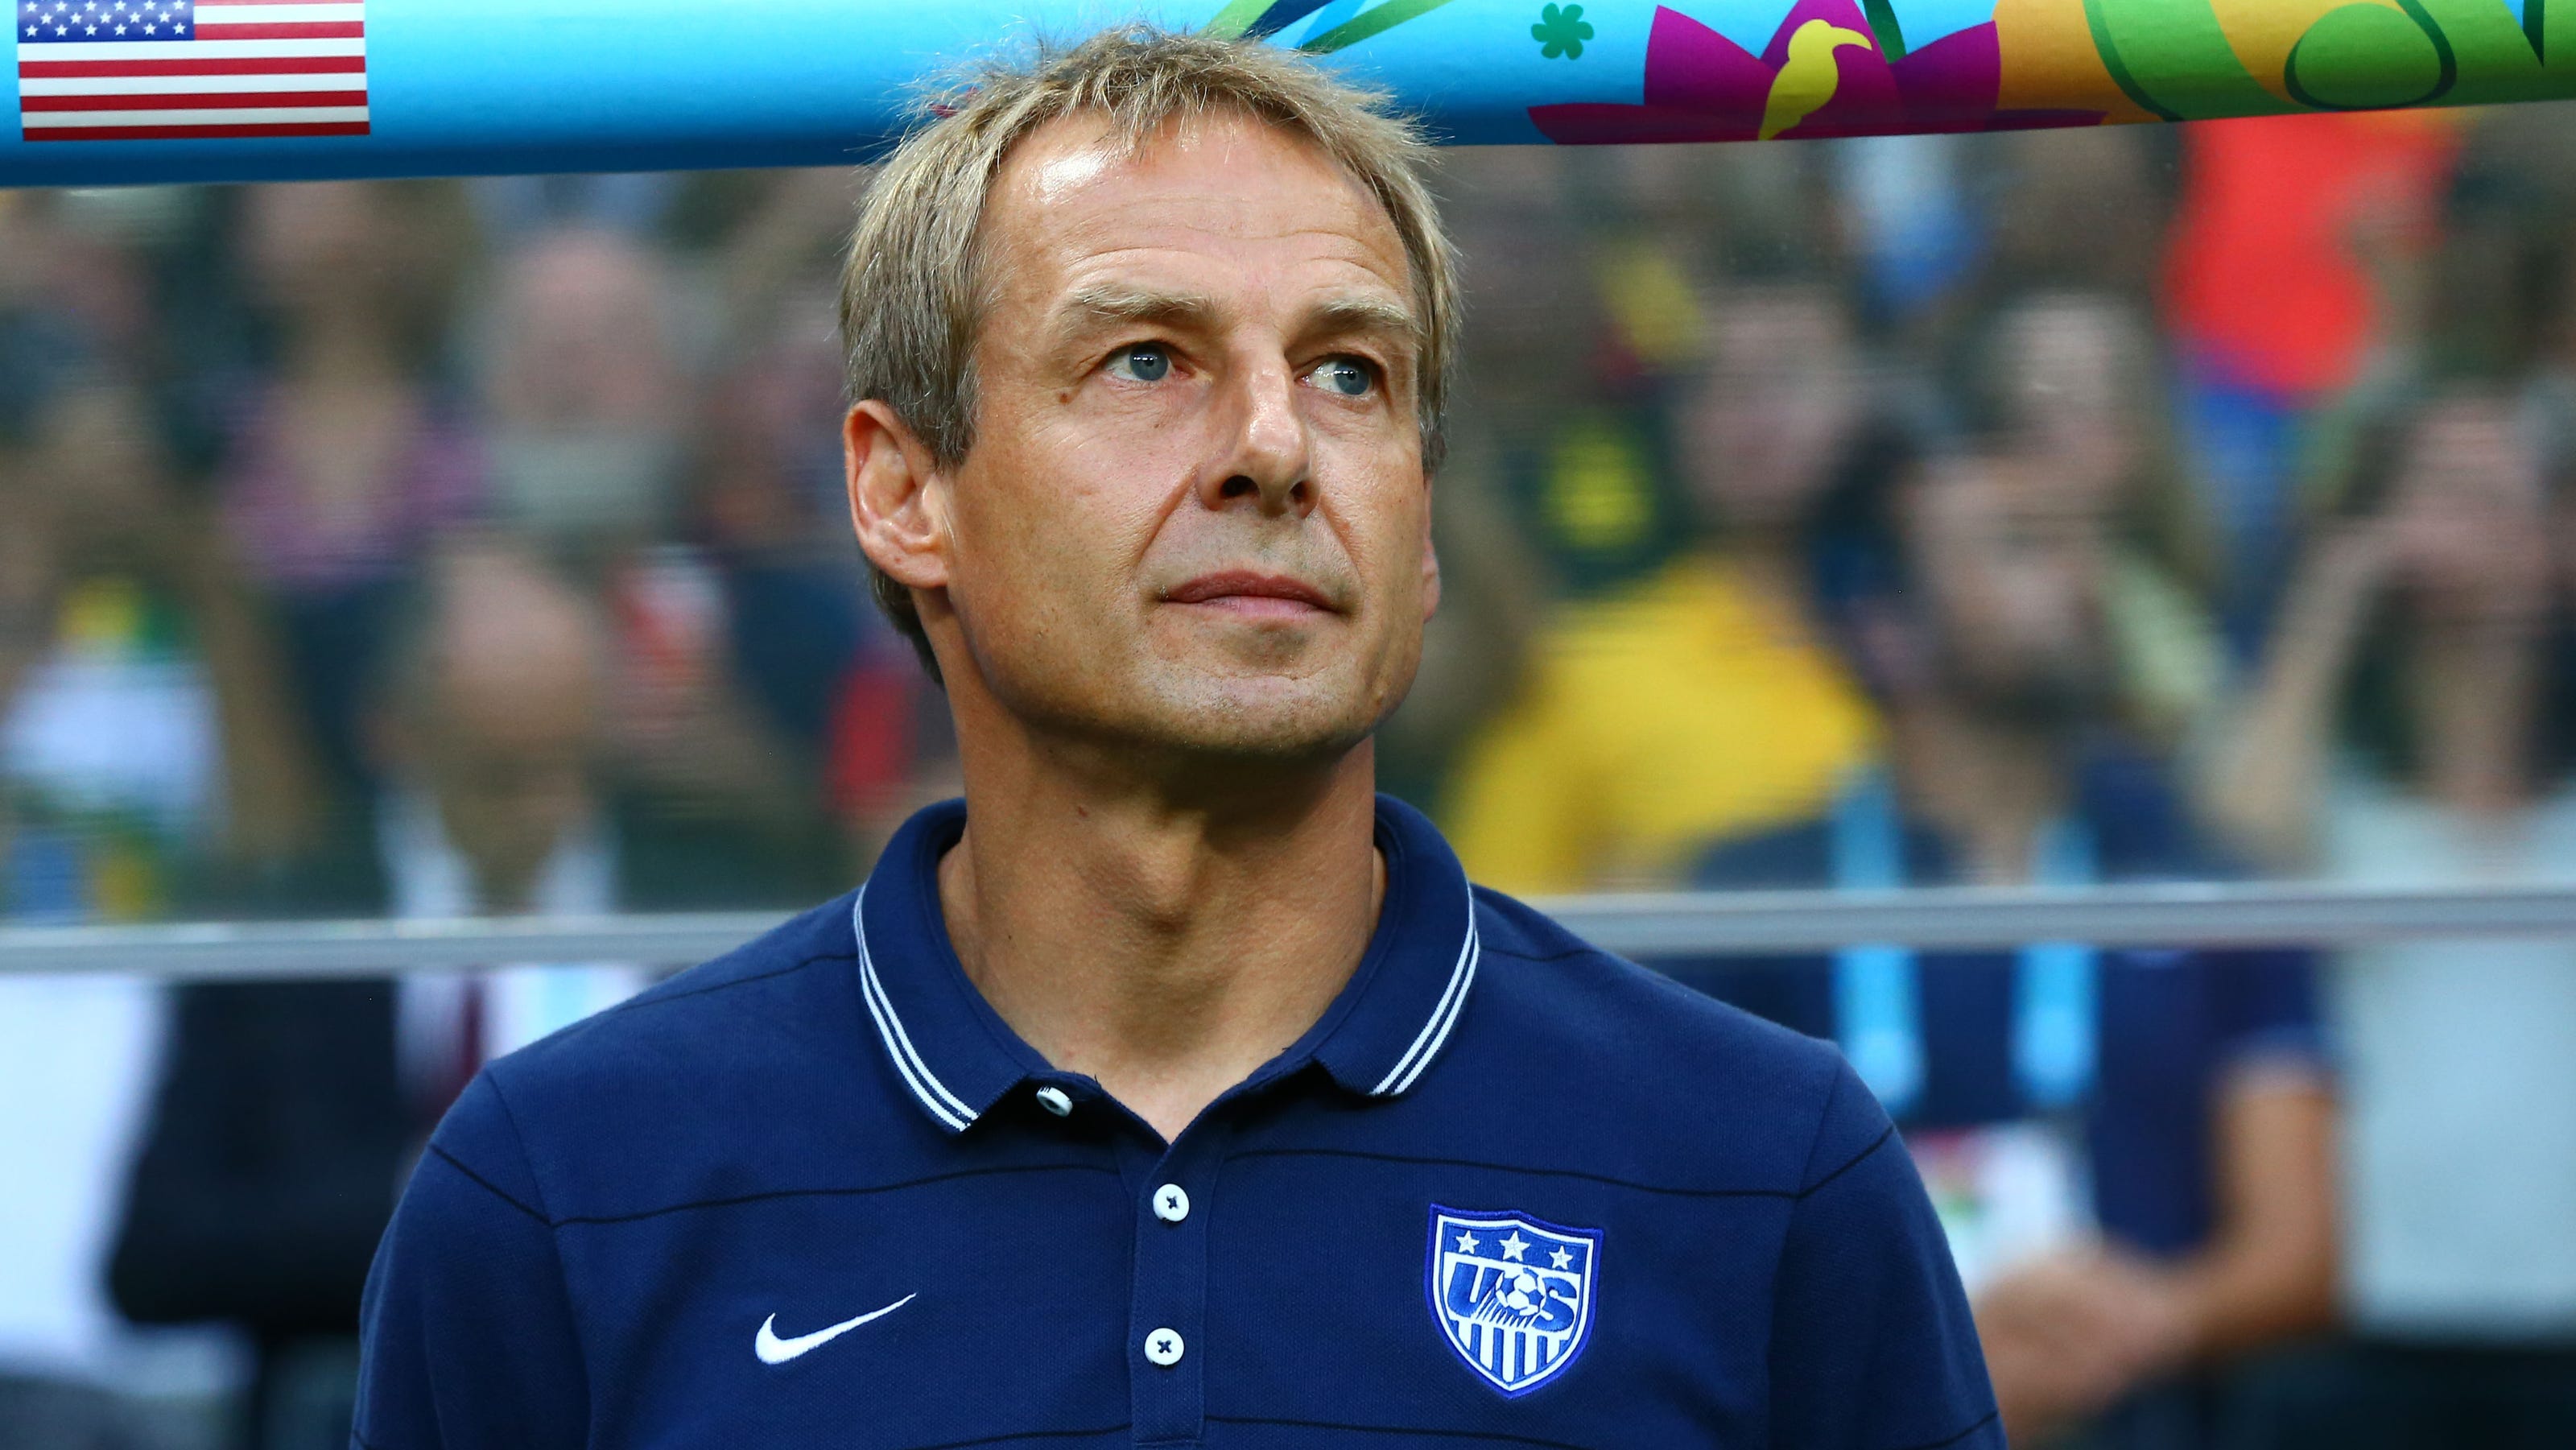 U.S. men's national soccer team coach Jurgen out